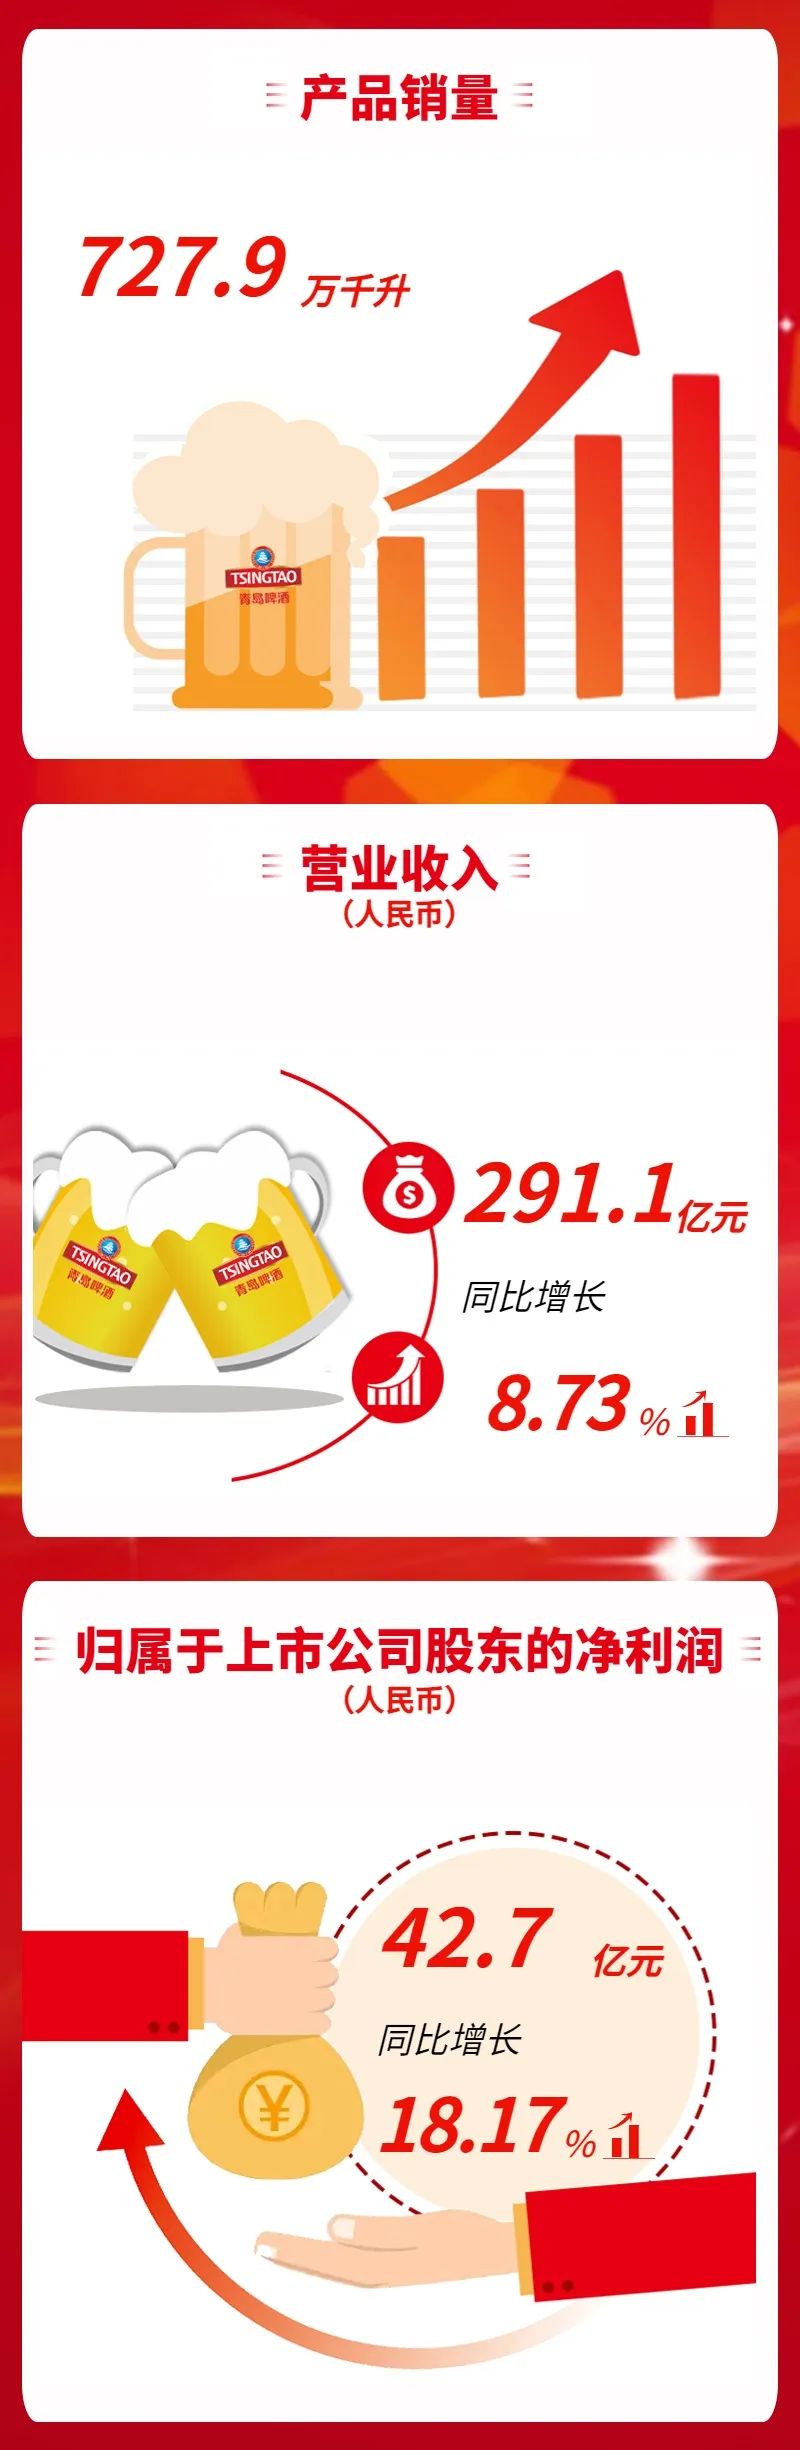 青岛啤酒三季报营收、净利再创新高，分别增长8.73%、18.17%